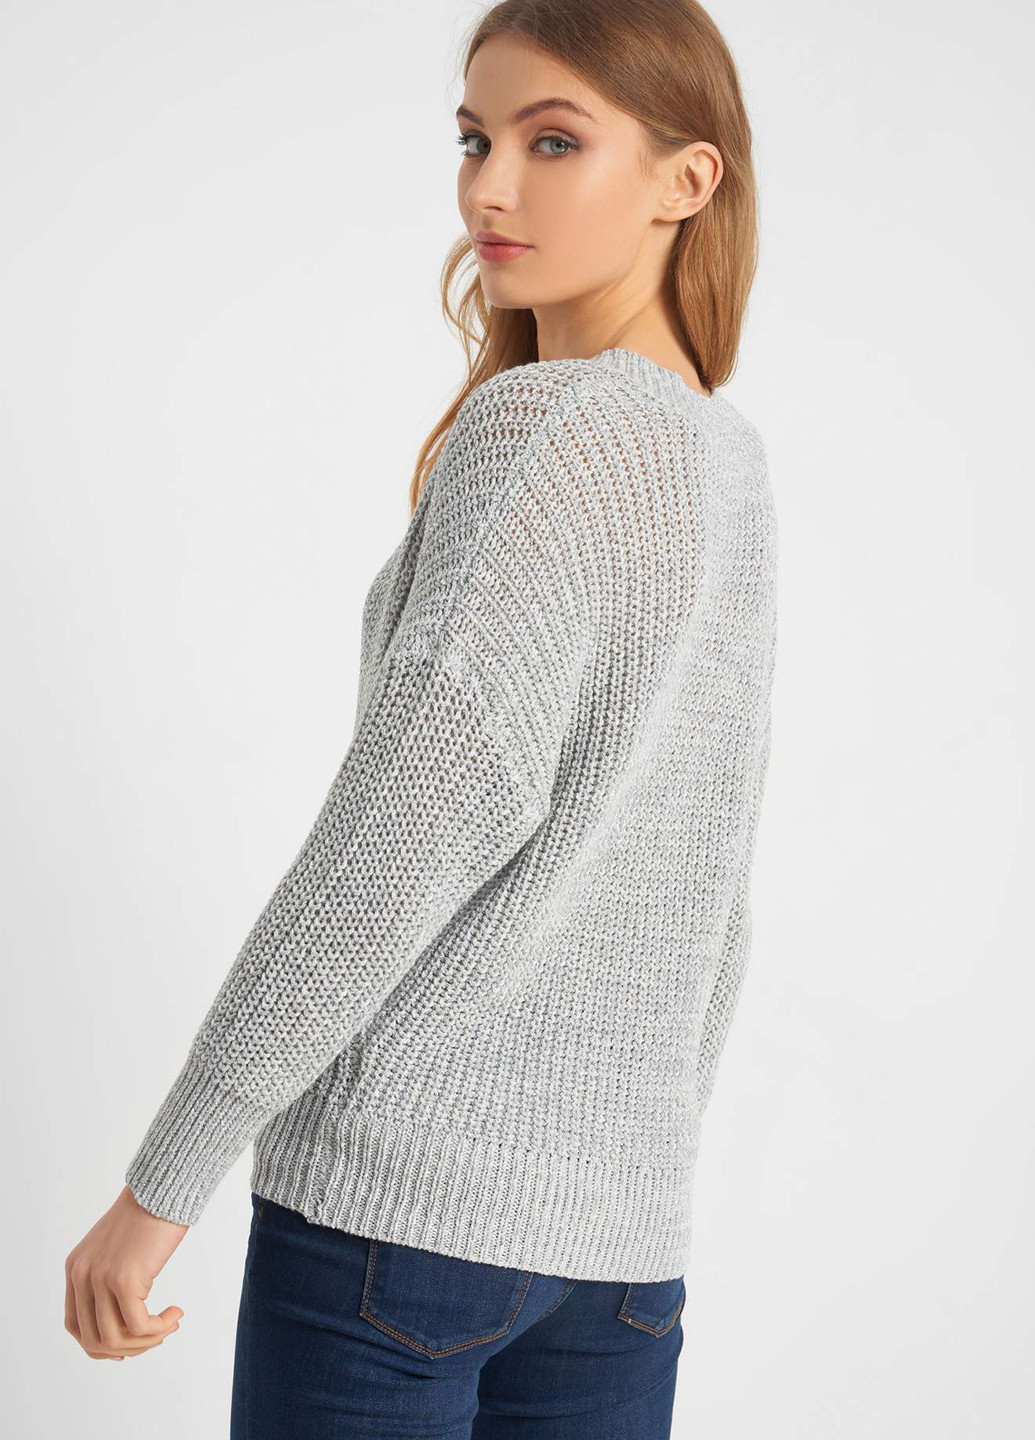 Светло-серый демисезонный пуловер пуловер Orsay